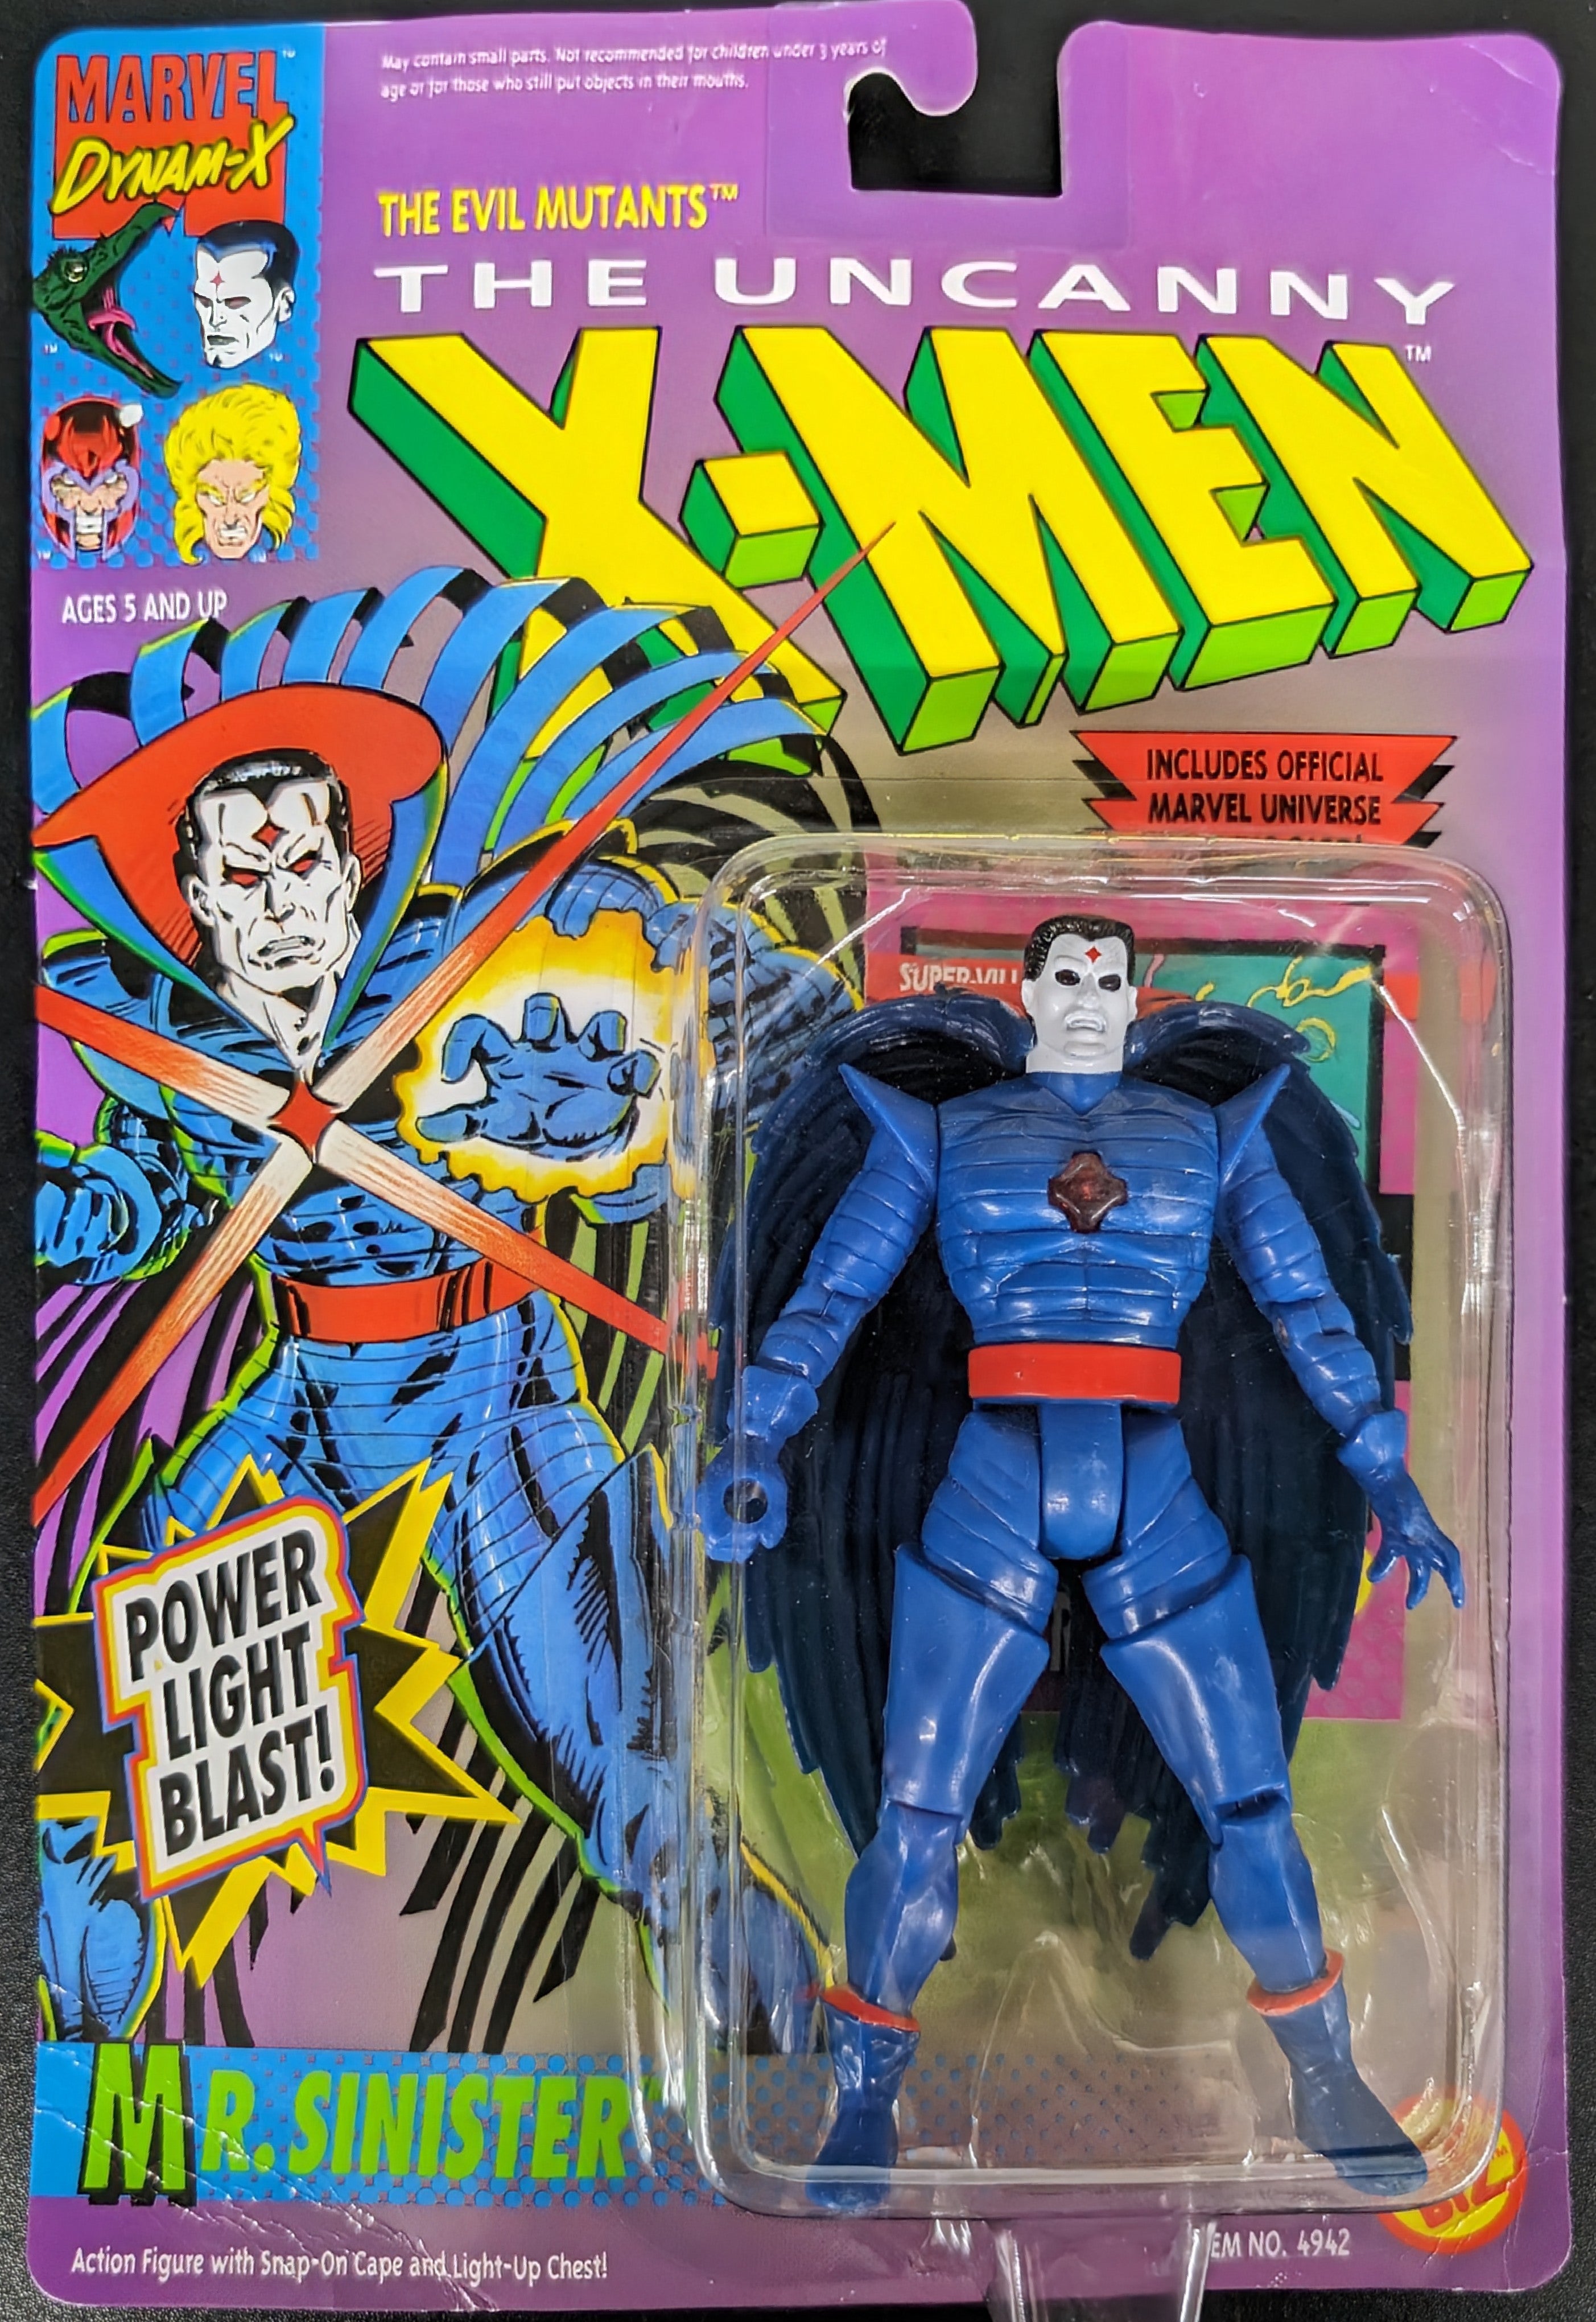 1992 Toy Biz Marvel Uncanny X-Men Action Figures: Mr. Sinister